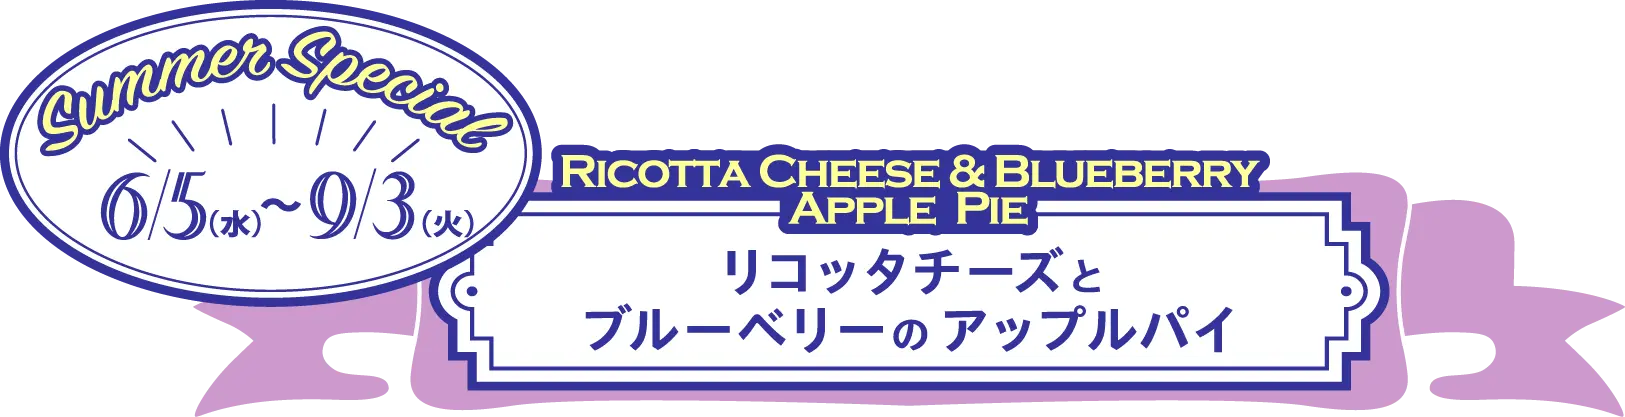 6月5日(水)から『リコッタチーズとブルーベリーのアップルパイ』が販売スタート。